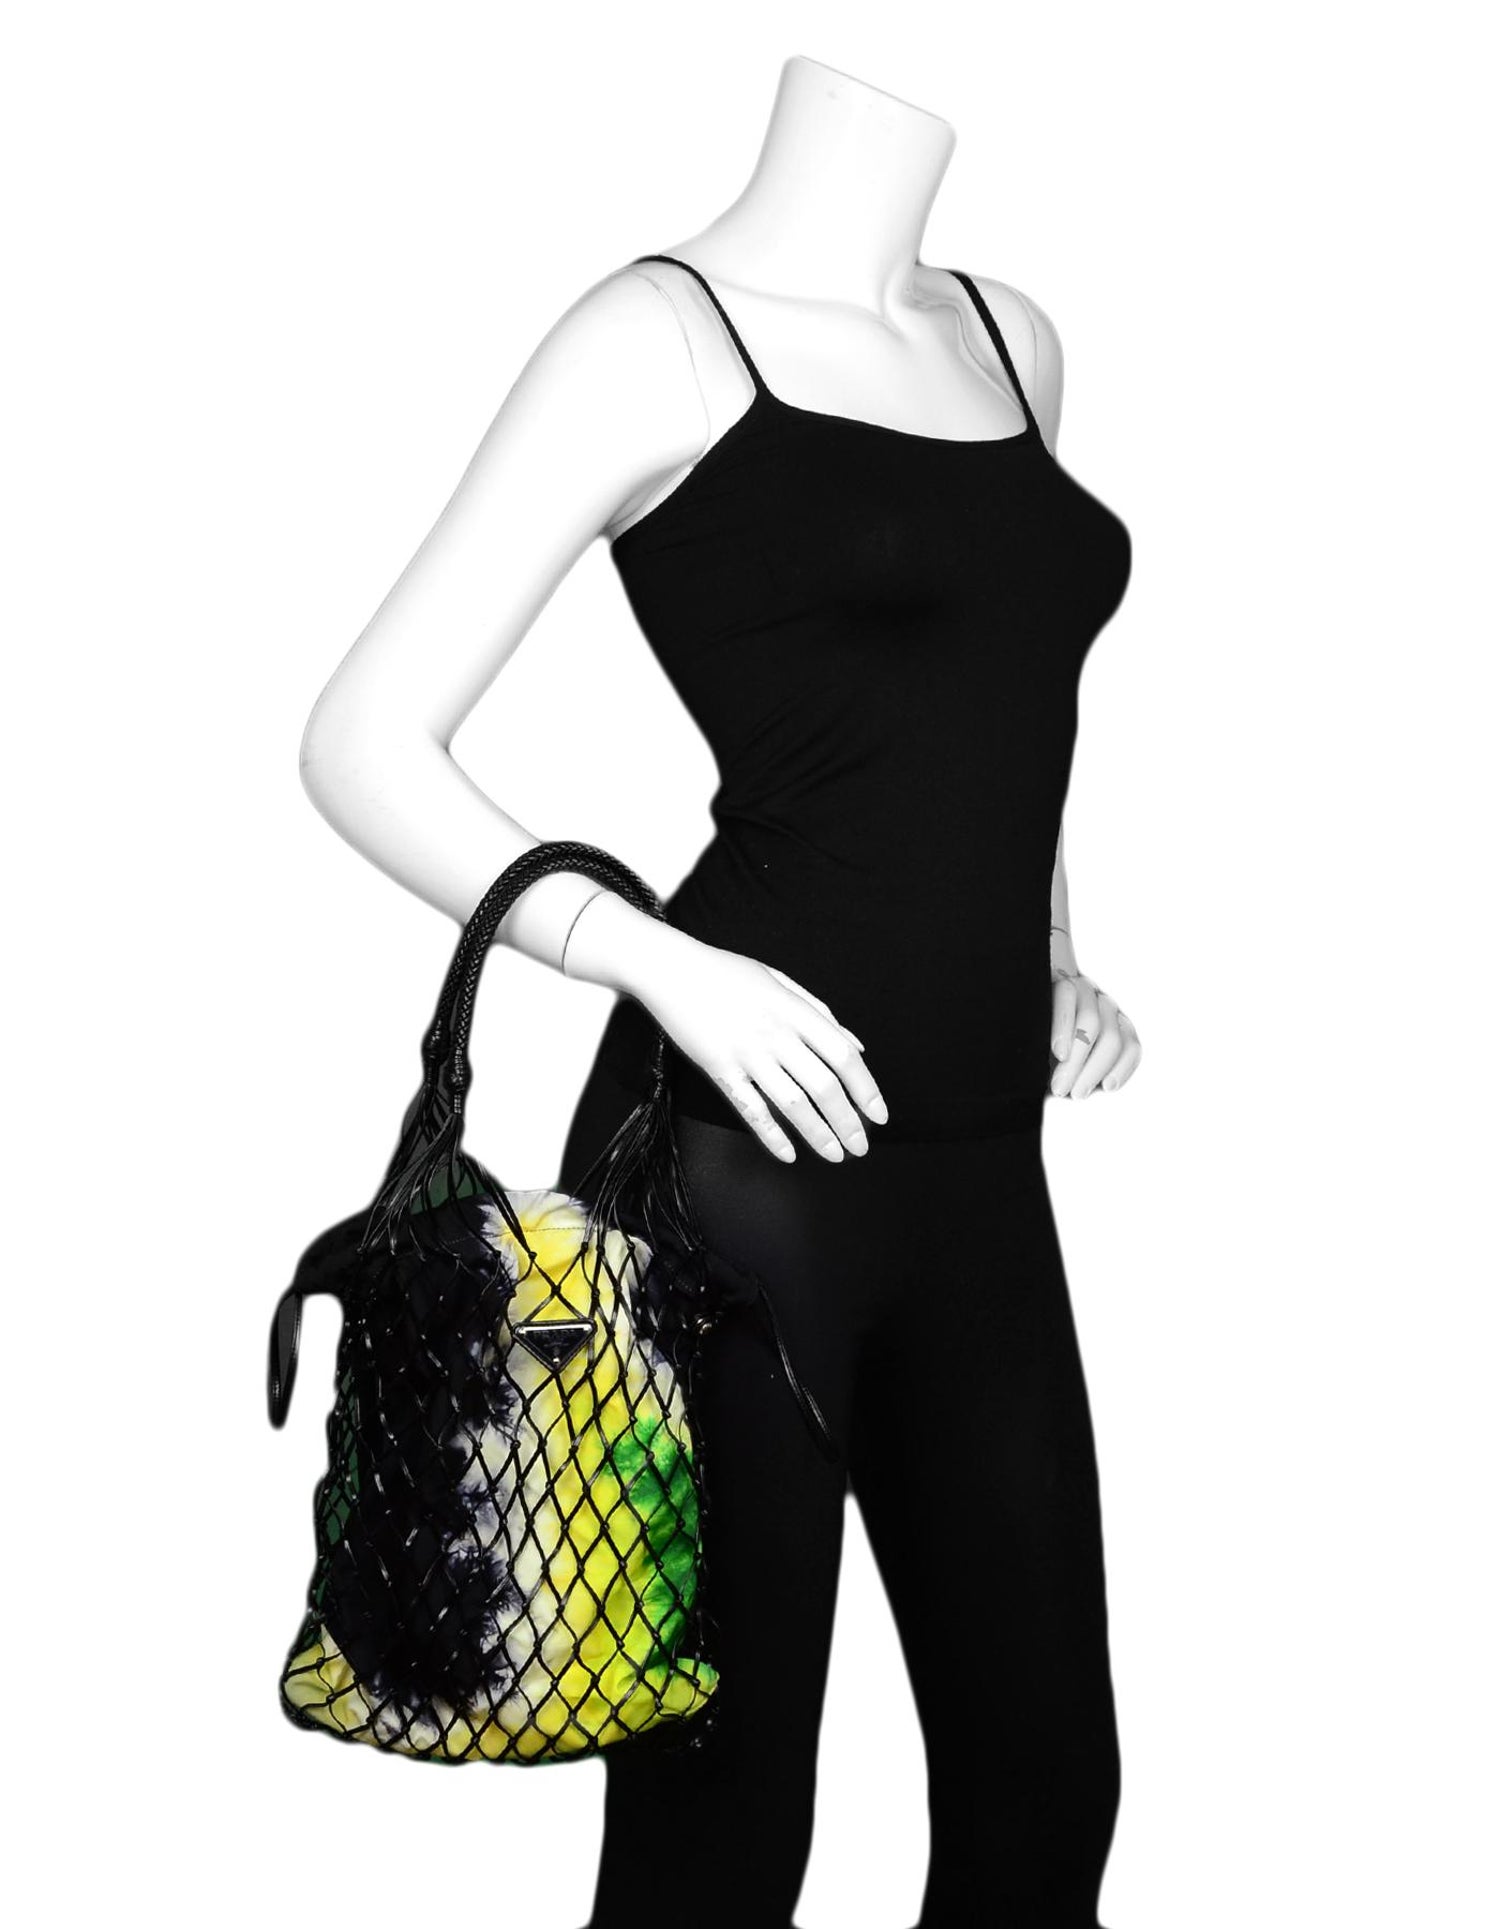 Prada Spring/Summer 2019 Leather Mesh Bag W/ Canvas Tie-Dye $1,520 |  islamiyyat.com